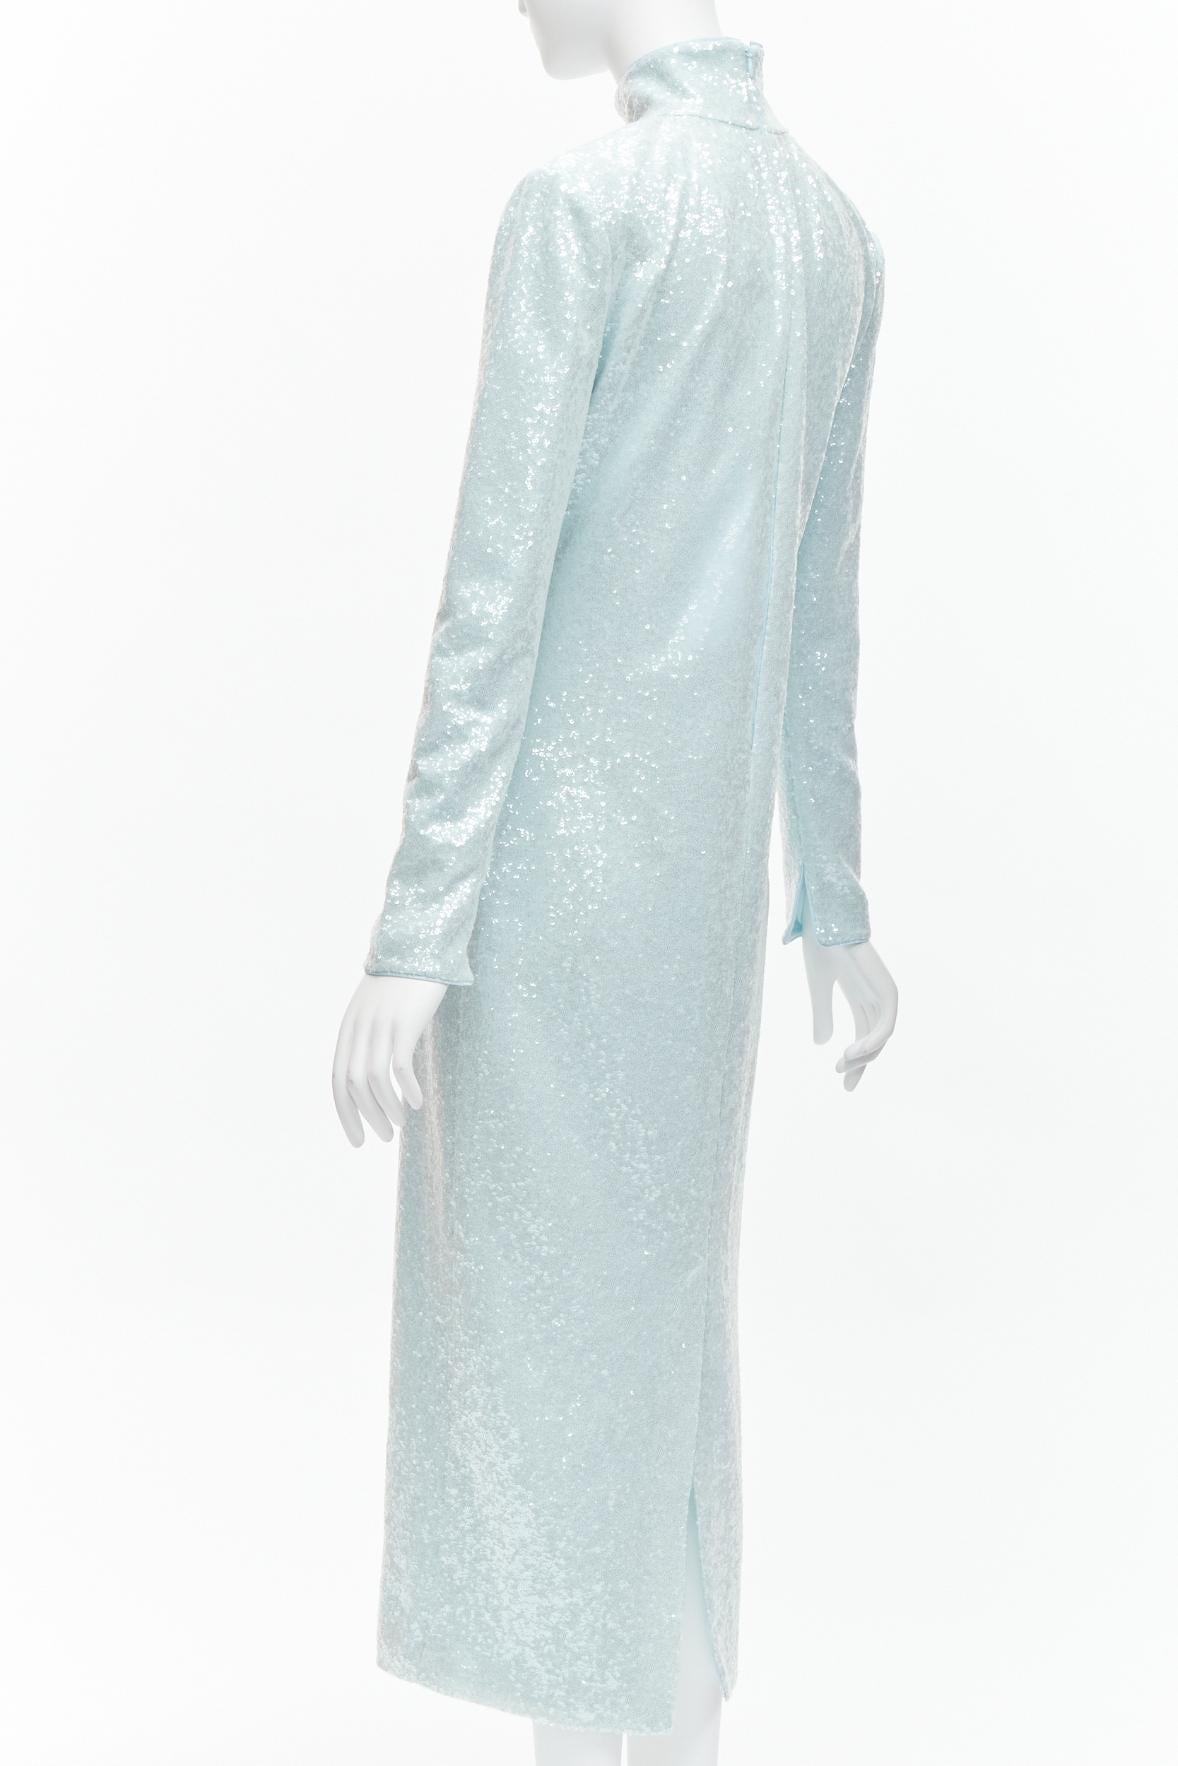 16ARLINGTON Vida light blue sequins high neck long sleeves cocktail dress UK6 XS For Sale 2